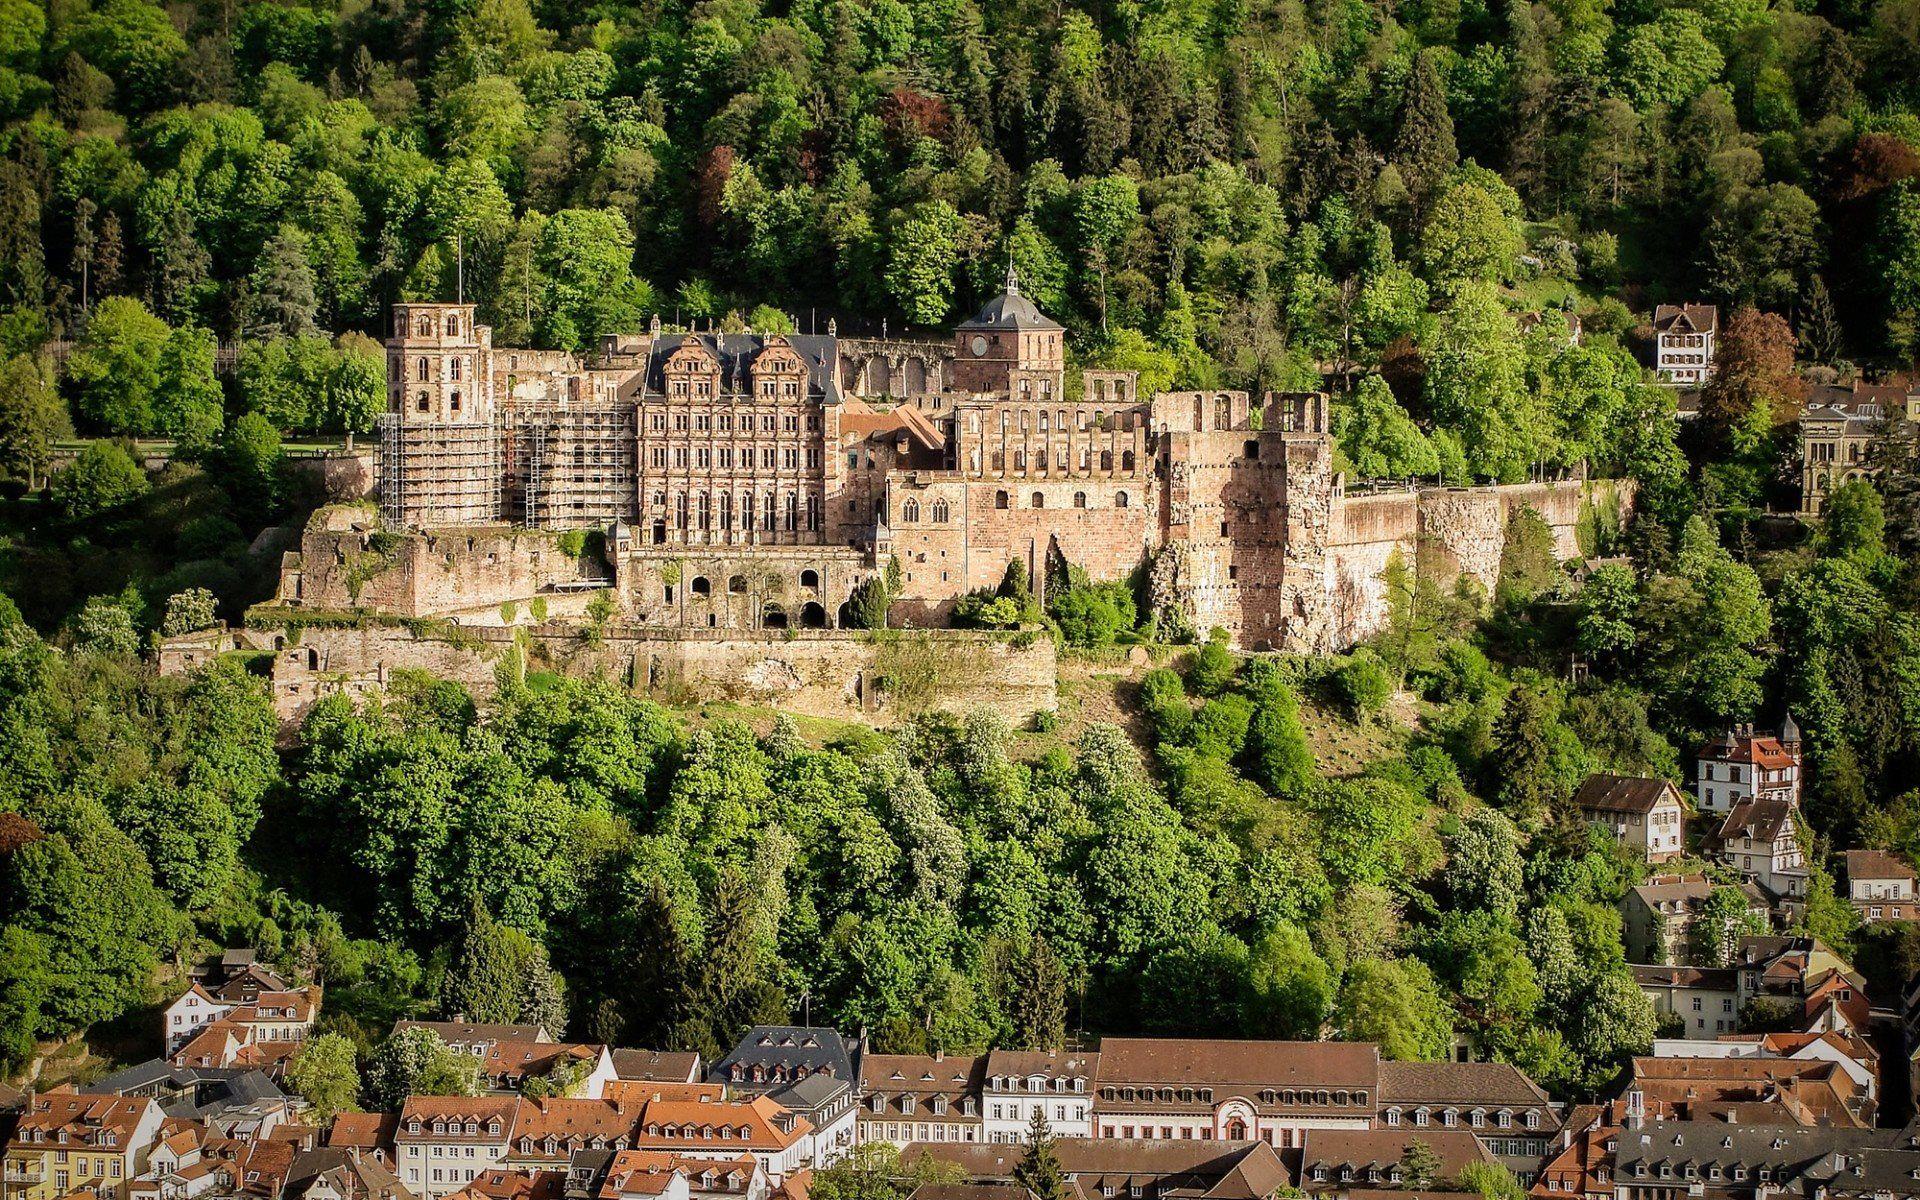 عکس قلعه قدیمی وسط جنگل با معماری رنسانس و کیفیت HD اچ دی 